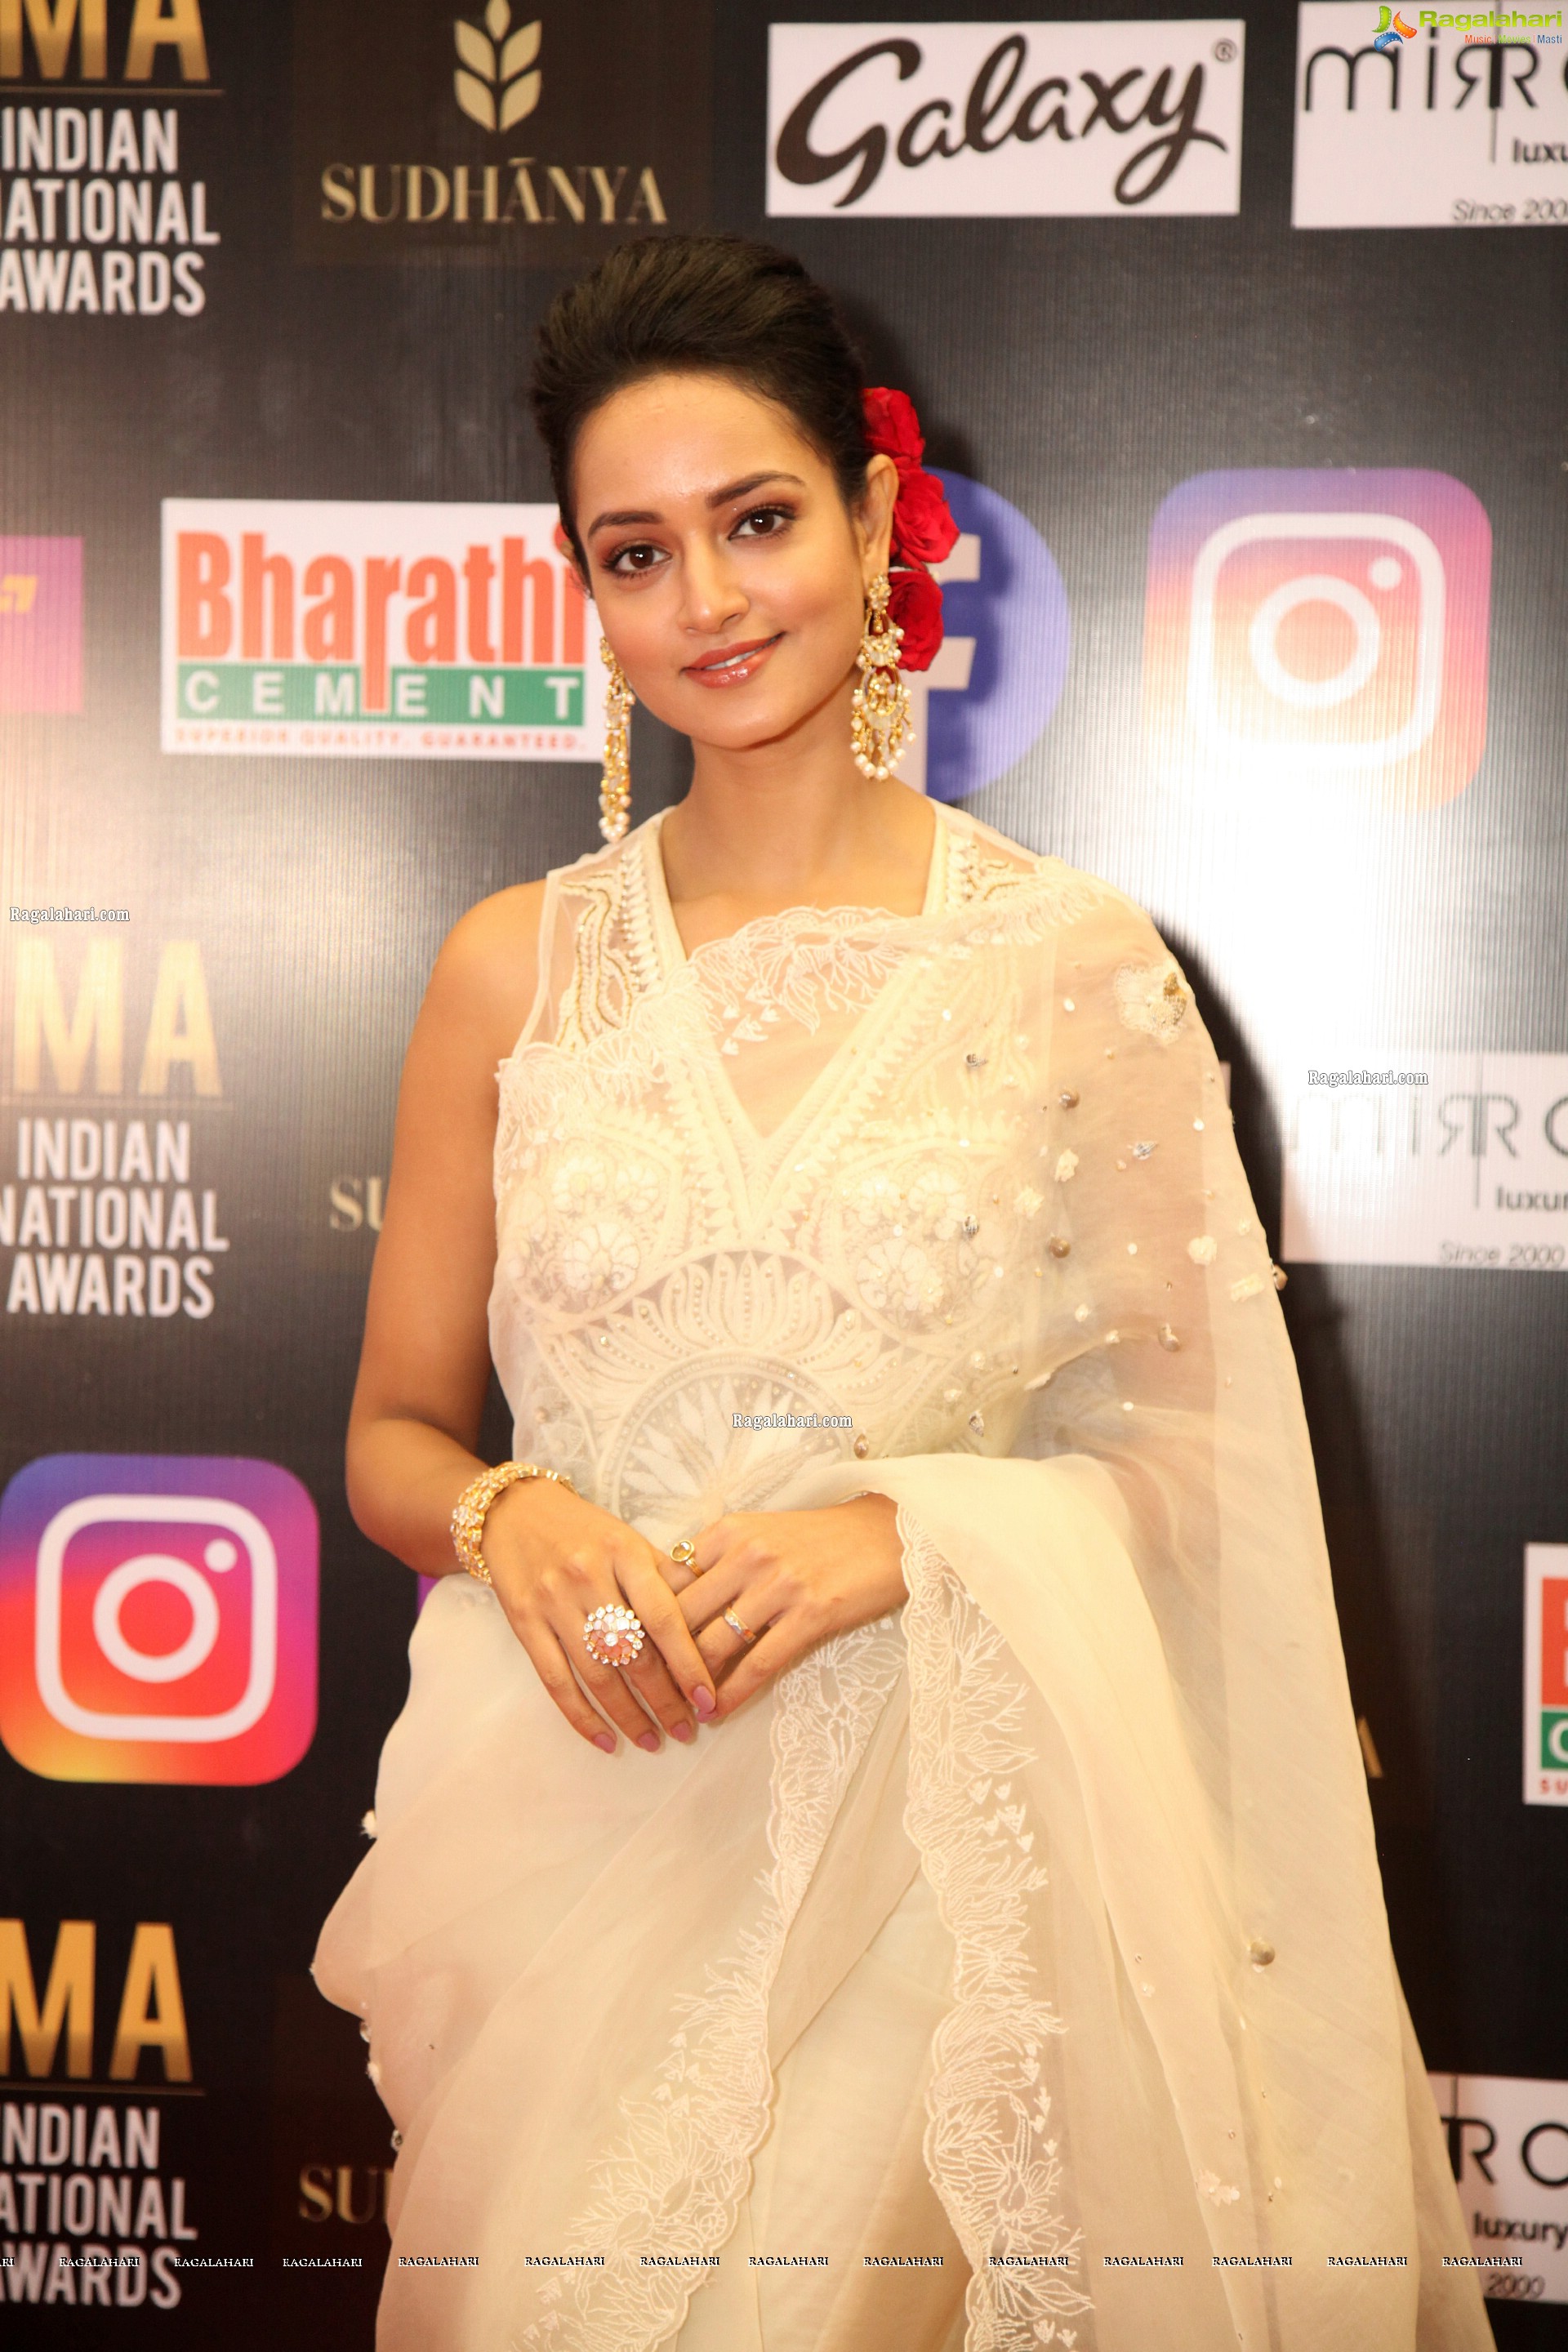 Shanvi Srivastava At SIIMA Awards 2021, HD Photo Gallery